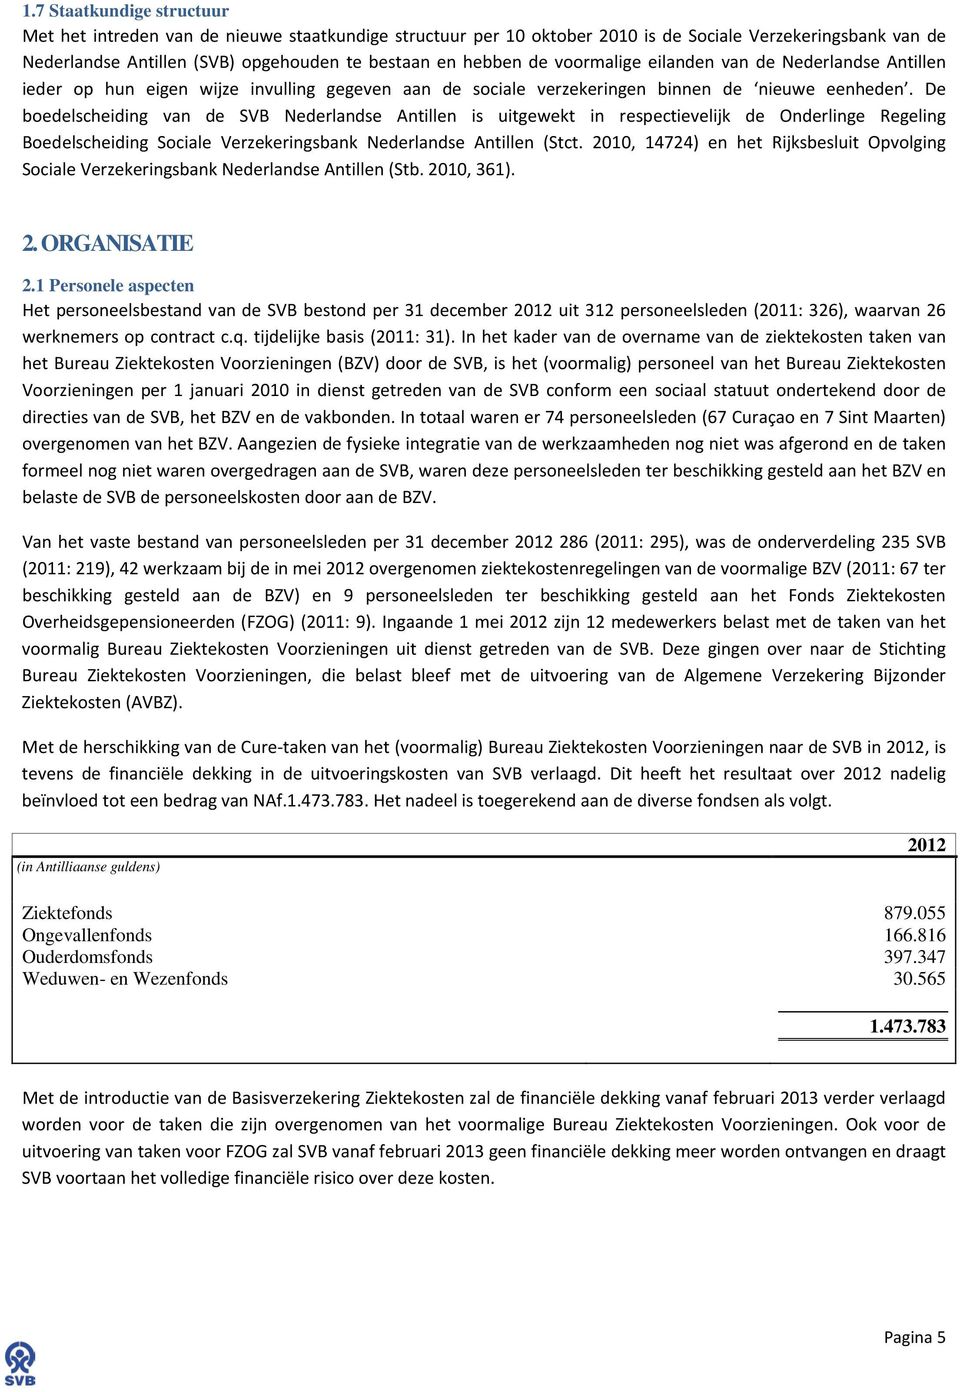 De boedelscheiding van de SVB Nederlandse Antillen is uitgewekt in respectievelijk de Onderlinge Regeling Boedelscheiding Sociale Verzekeringsbank Nederlandse Antillen (Stct.